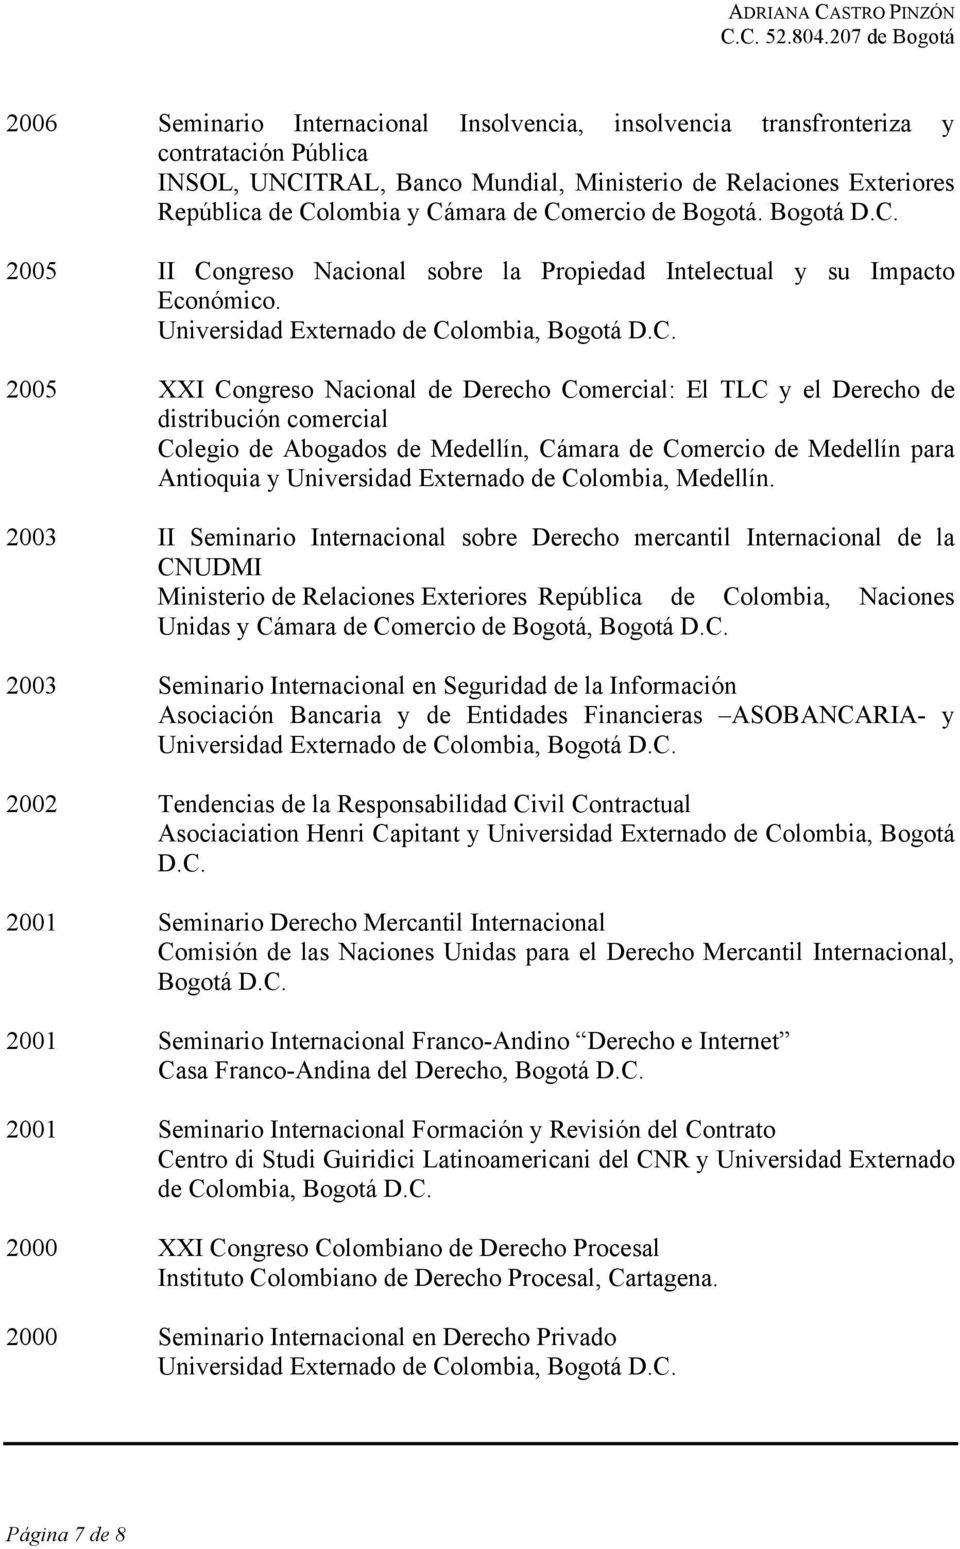 2003 II Seminario Internacional sobre Derecho mercantil Internacional de la CNUDMI Ministerio de Relaciones Exteriores República de Colombia, Naciones Unidas y Cámara de Comercio de Bogotá, Bogotá D.